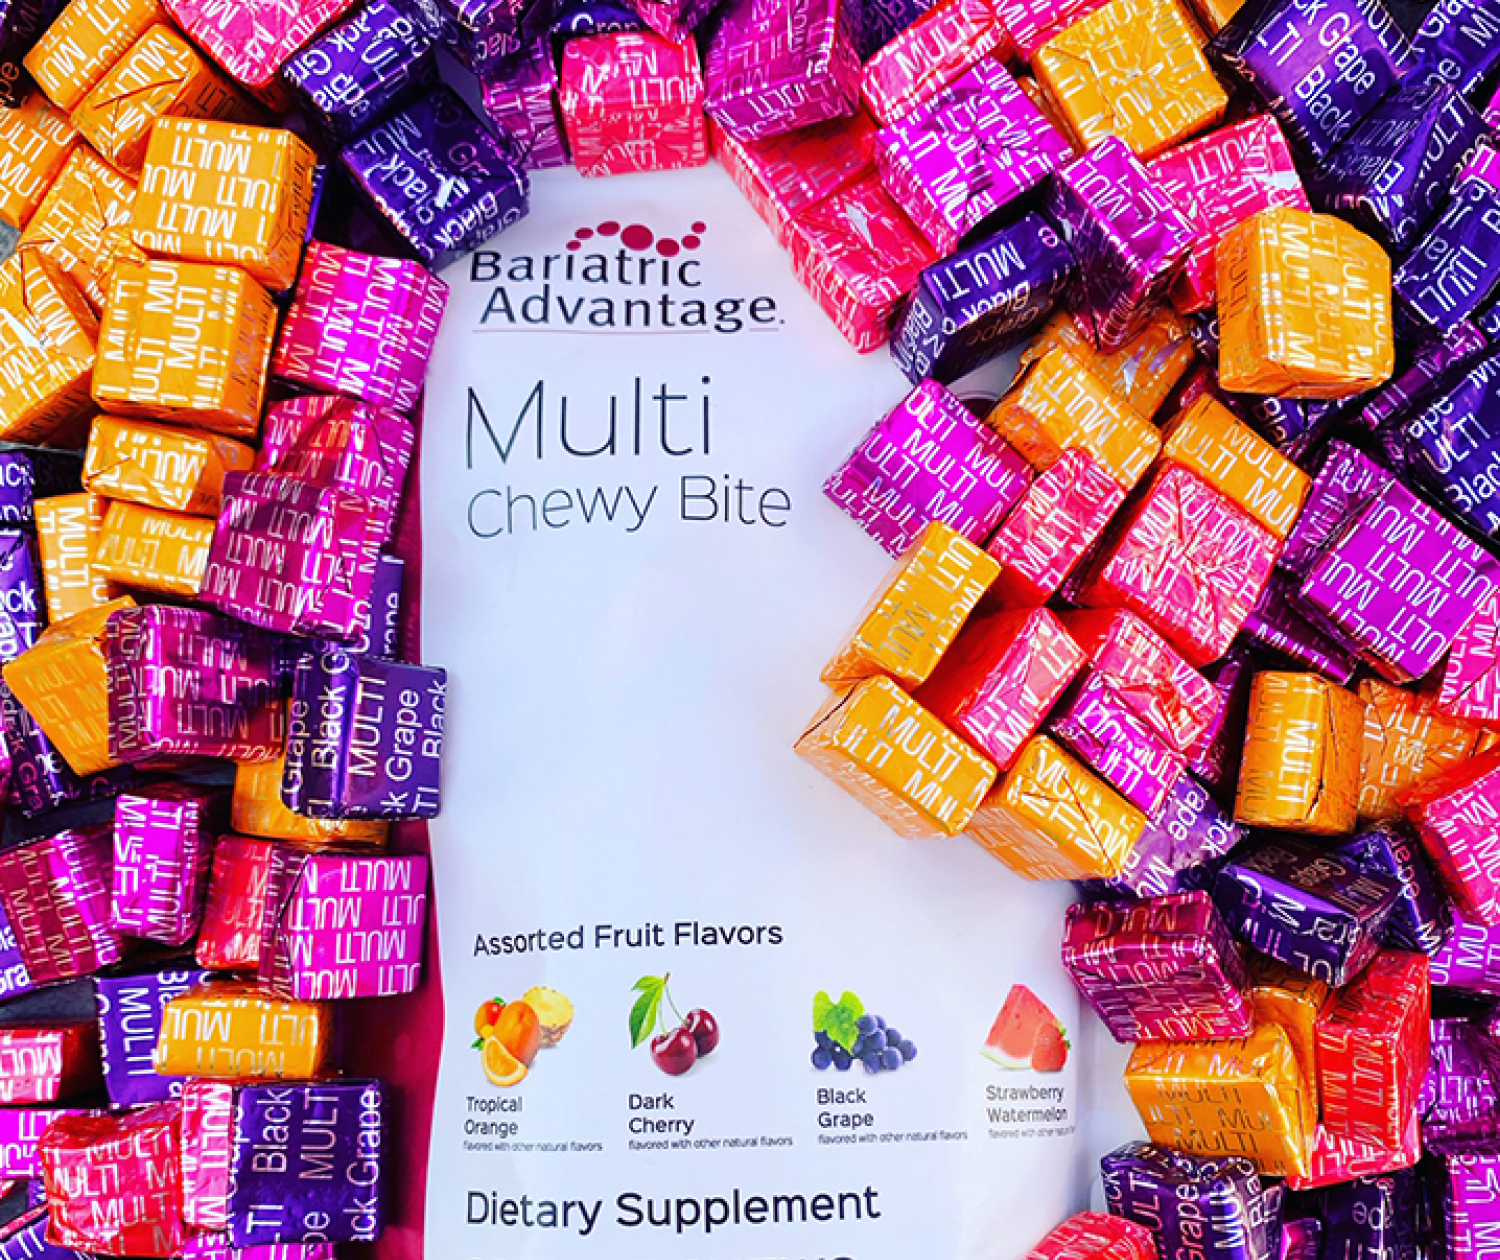 Multi Chewy Bite: The Delicious Multivitamin